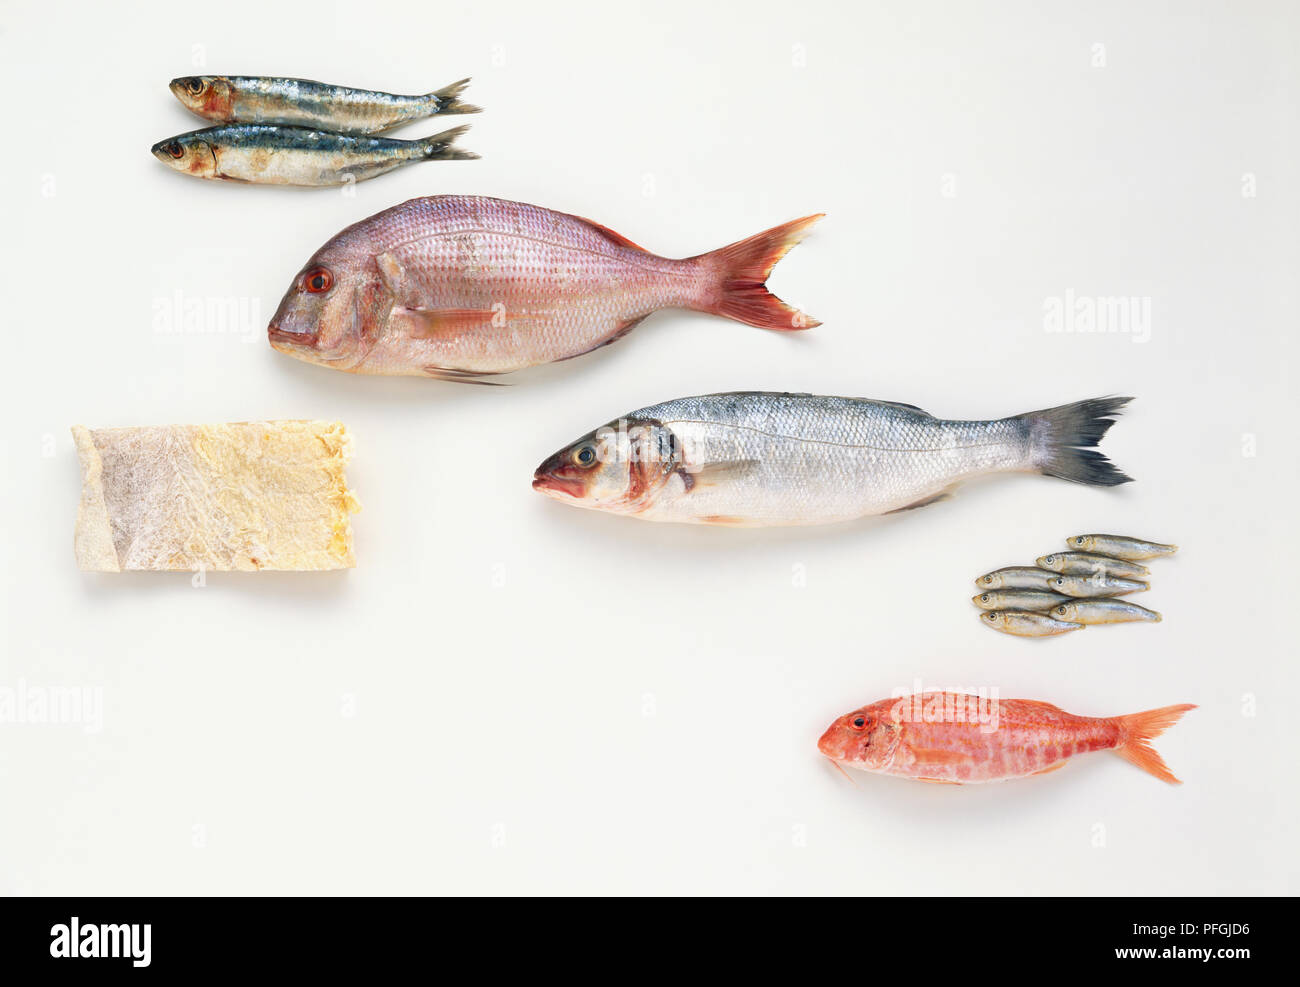 Pescado fresco, incluyendo, de arriba a abajo, las sardinas, el besugo, la lubina, el Whitebait y salmonete, y un trozo de bacalao salado, vista lateral. Foto de stock